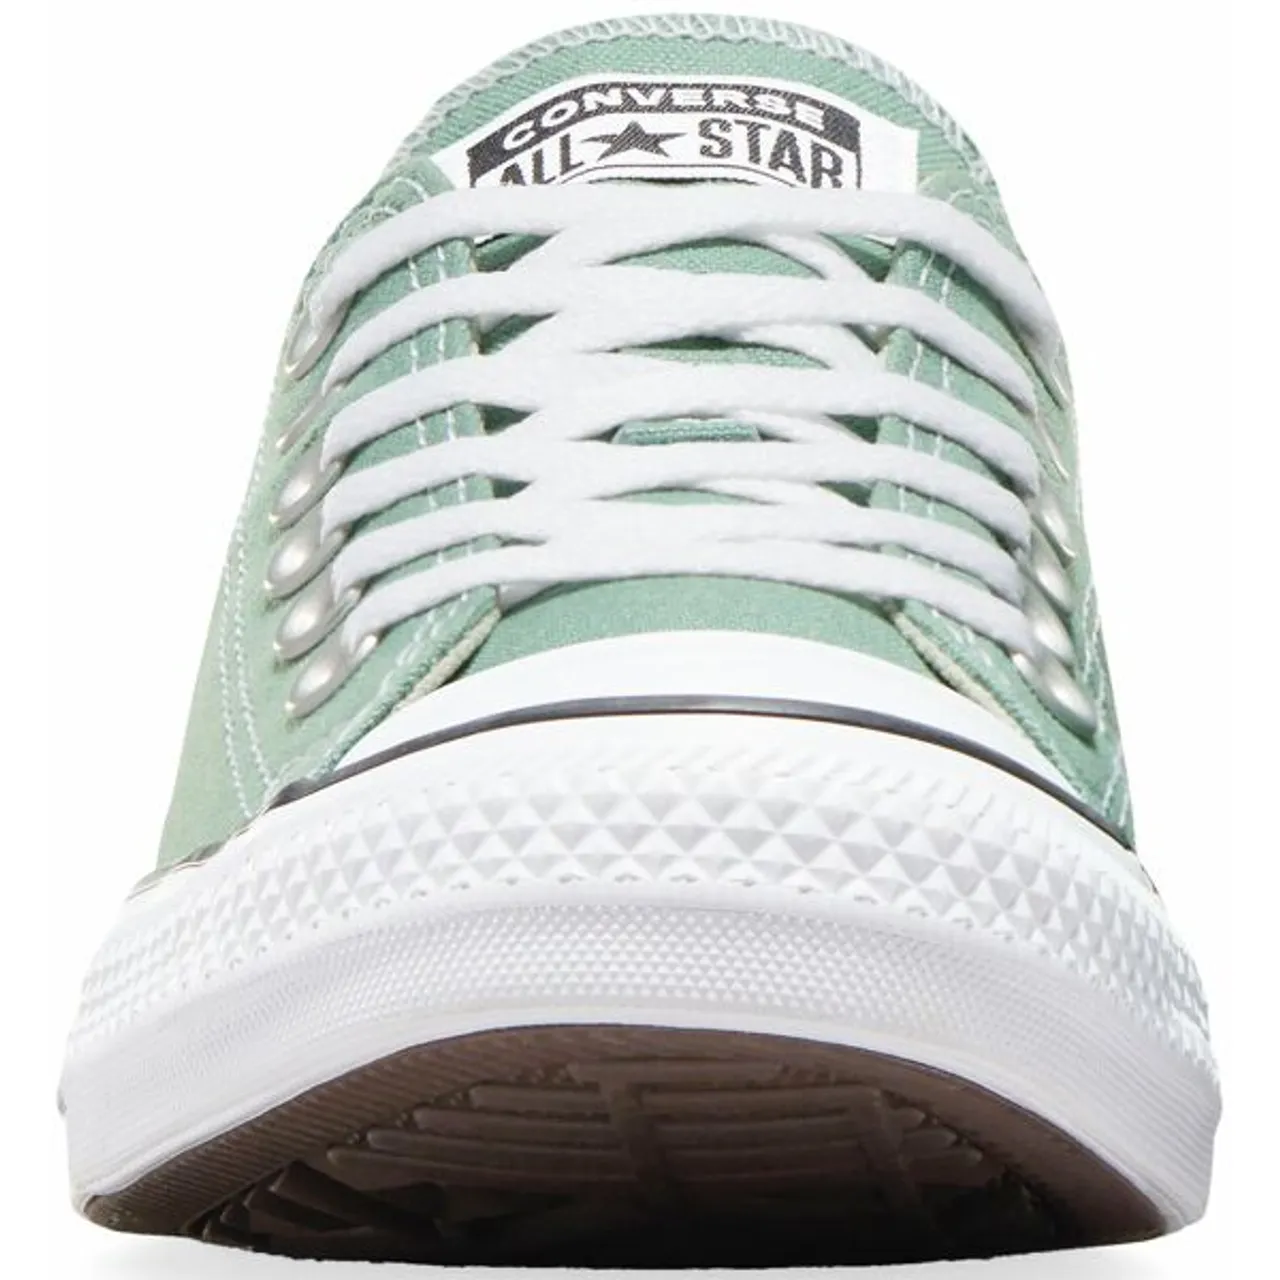 Sneaker CONVERSE "CHUCK TAYLOR ALL STAR" Gr. 39,5, grün (herby) Schuhe Bekleidung